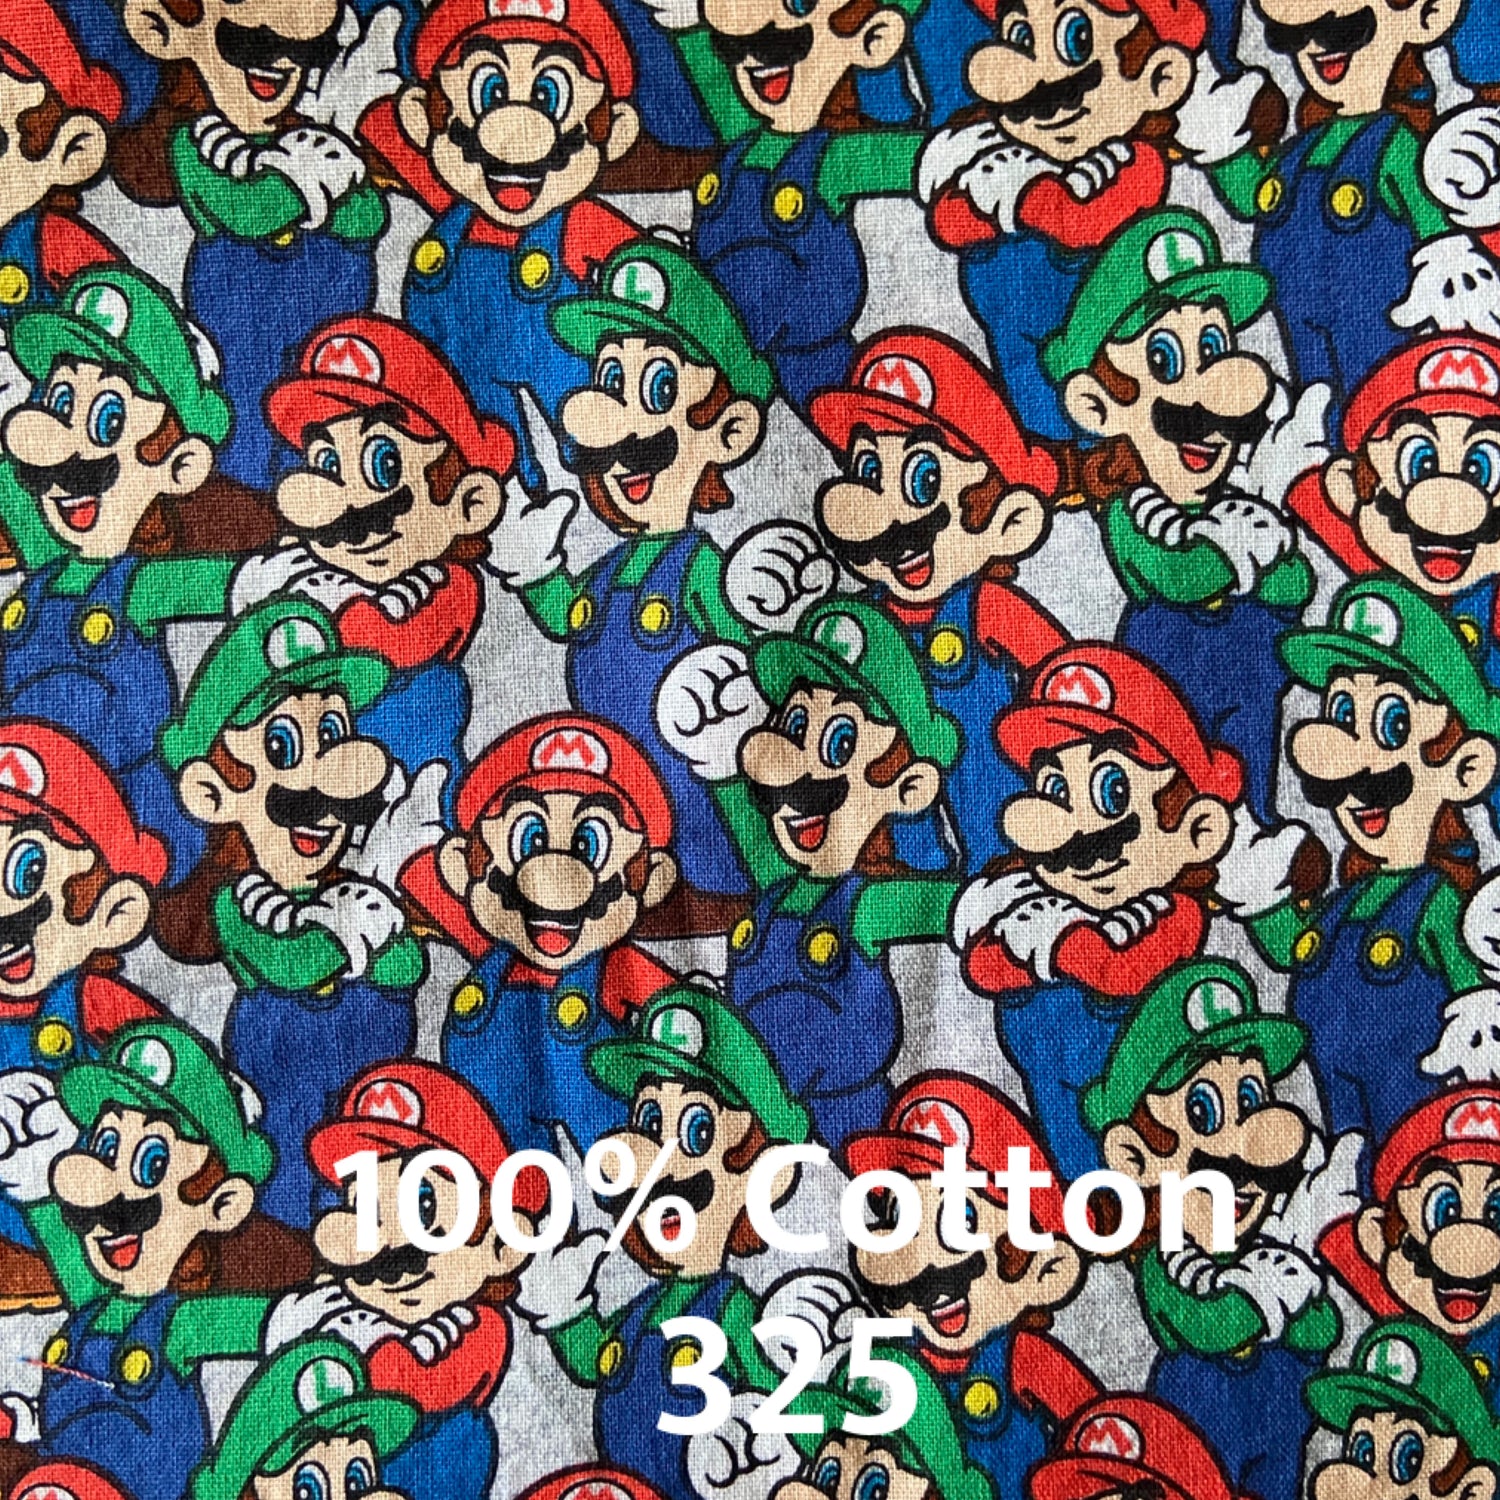 Super Mario fabric